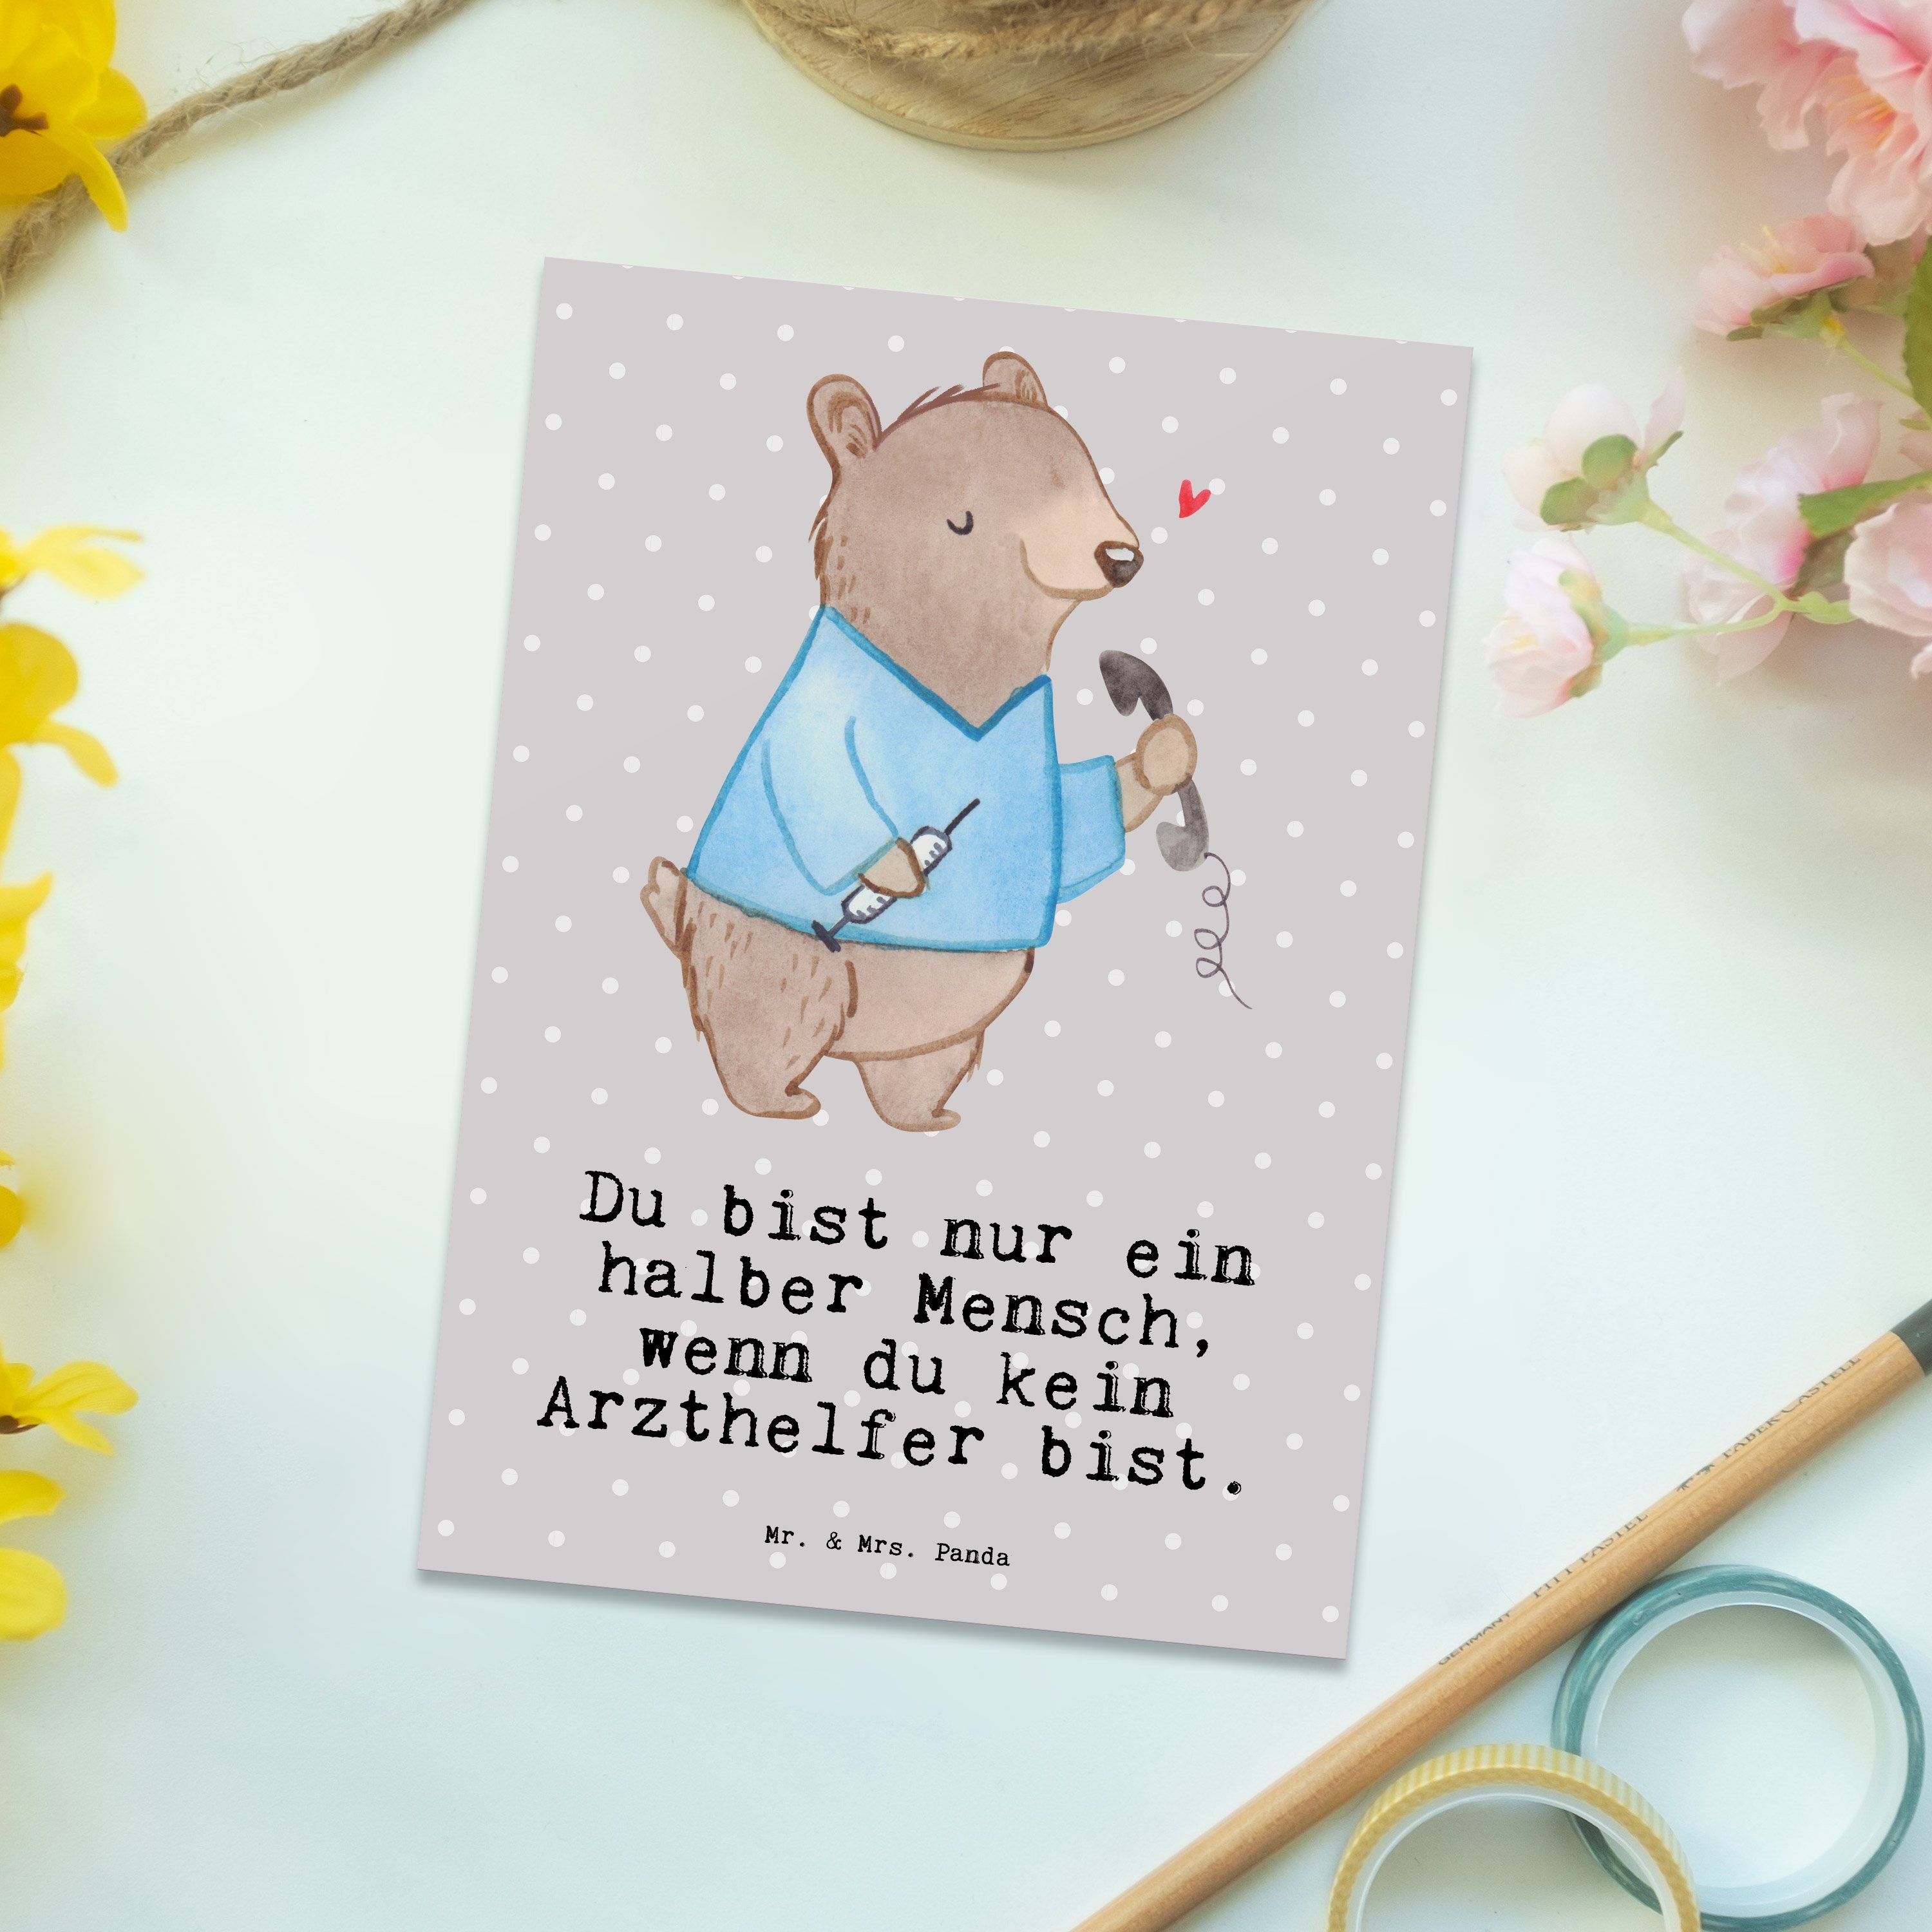 Panda Geburtstagskarte, mit Herz Geschenk, Postkarte Pastell Mrs. & Arzthelfer Gesc Grau - Mr. -